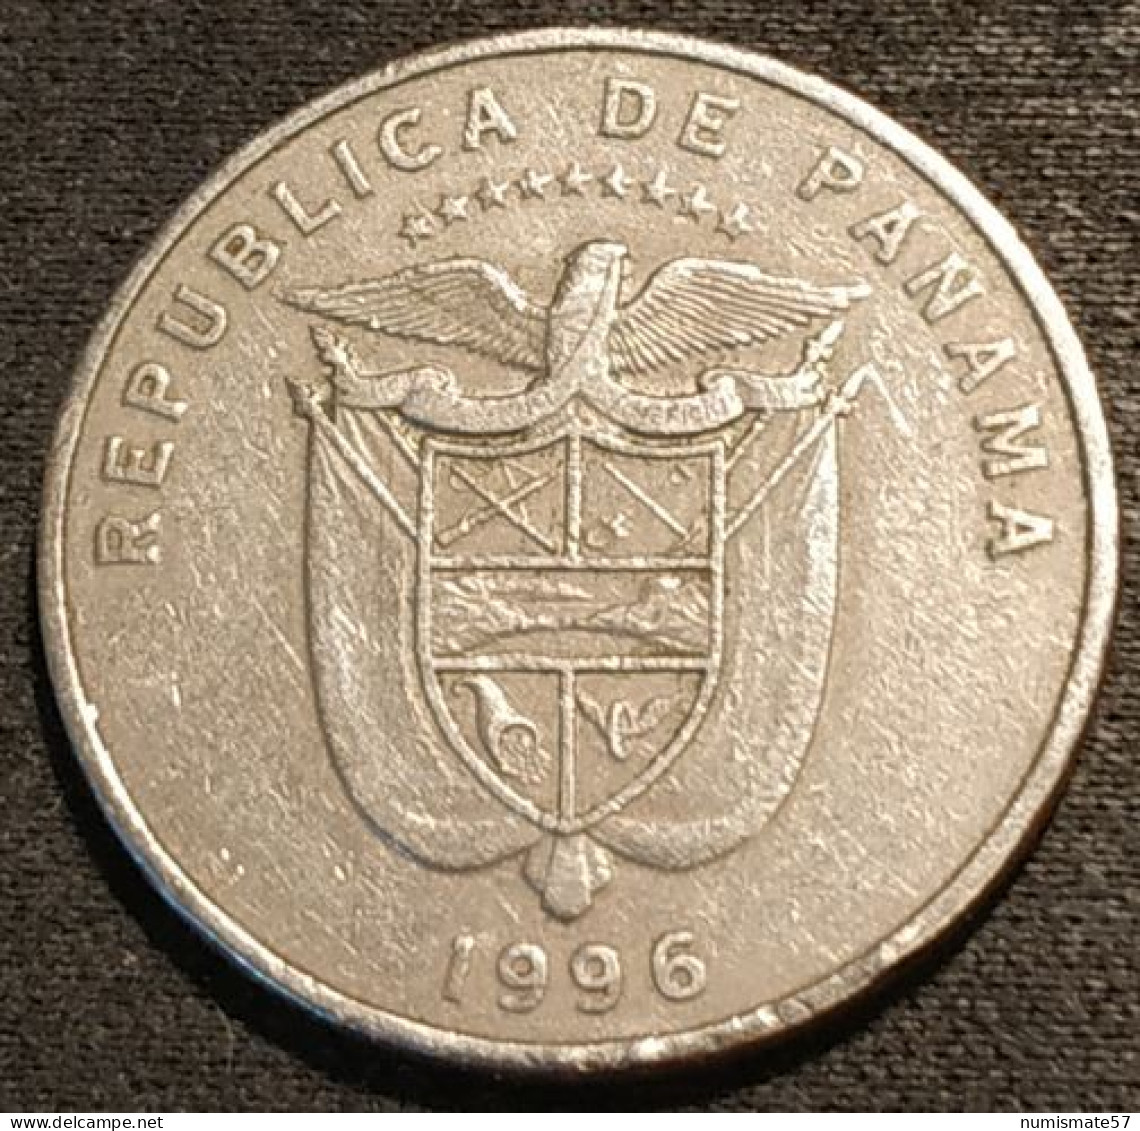 PANAMA - ¼ - 1/4 BALBOA 1996 - KM 128.1 - Vasco Núñez De Balboa - Panama